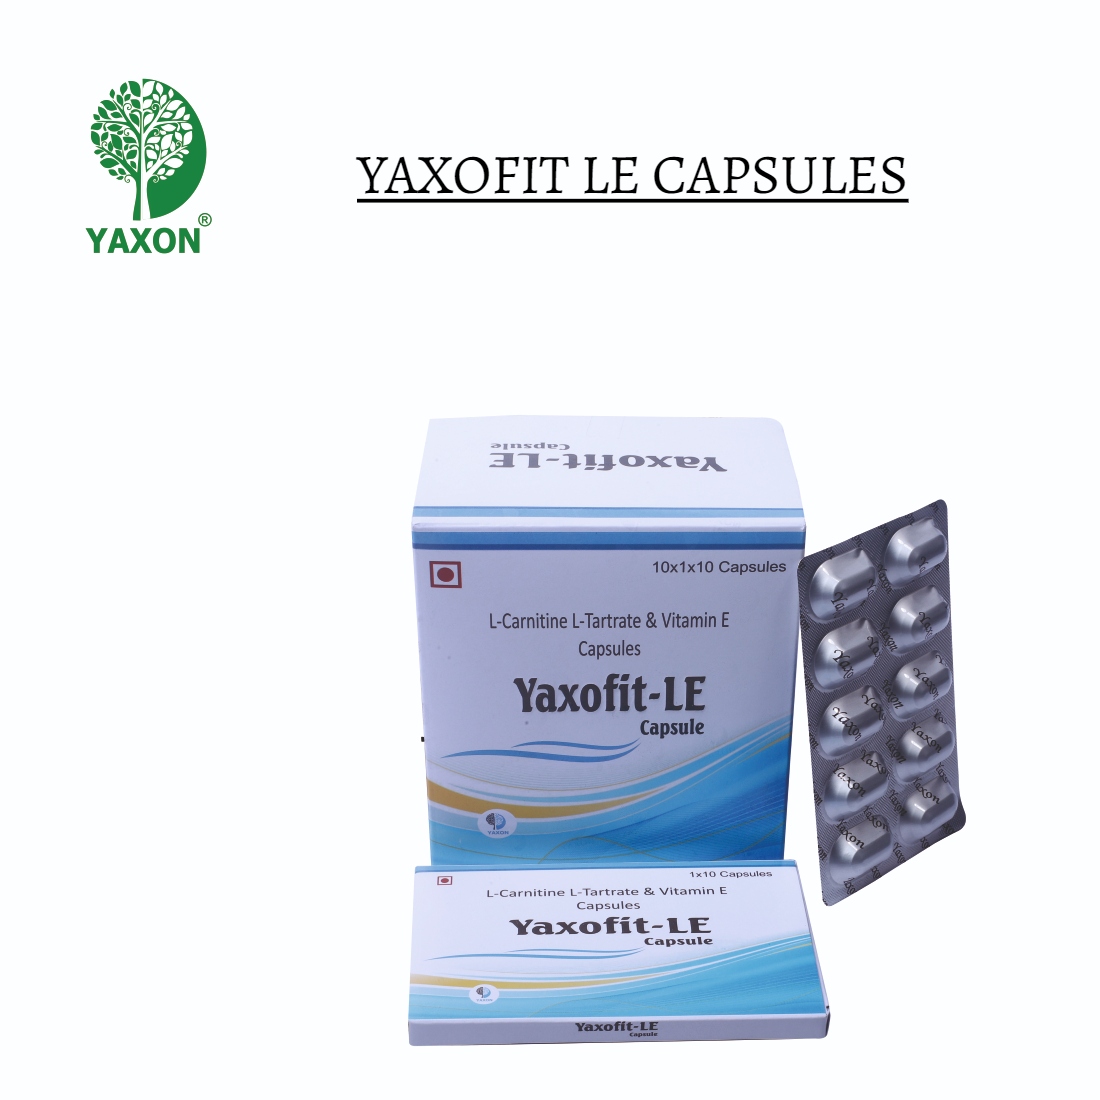 YAXON YAXOFIT-LE Capsules